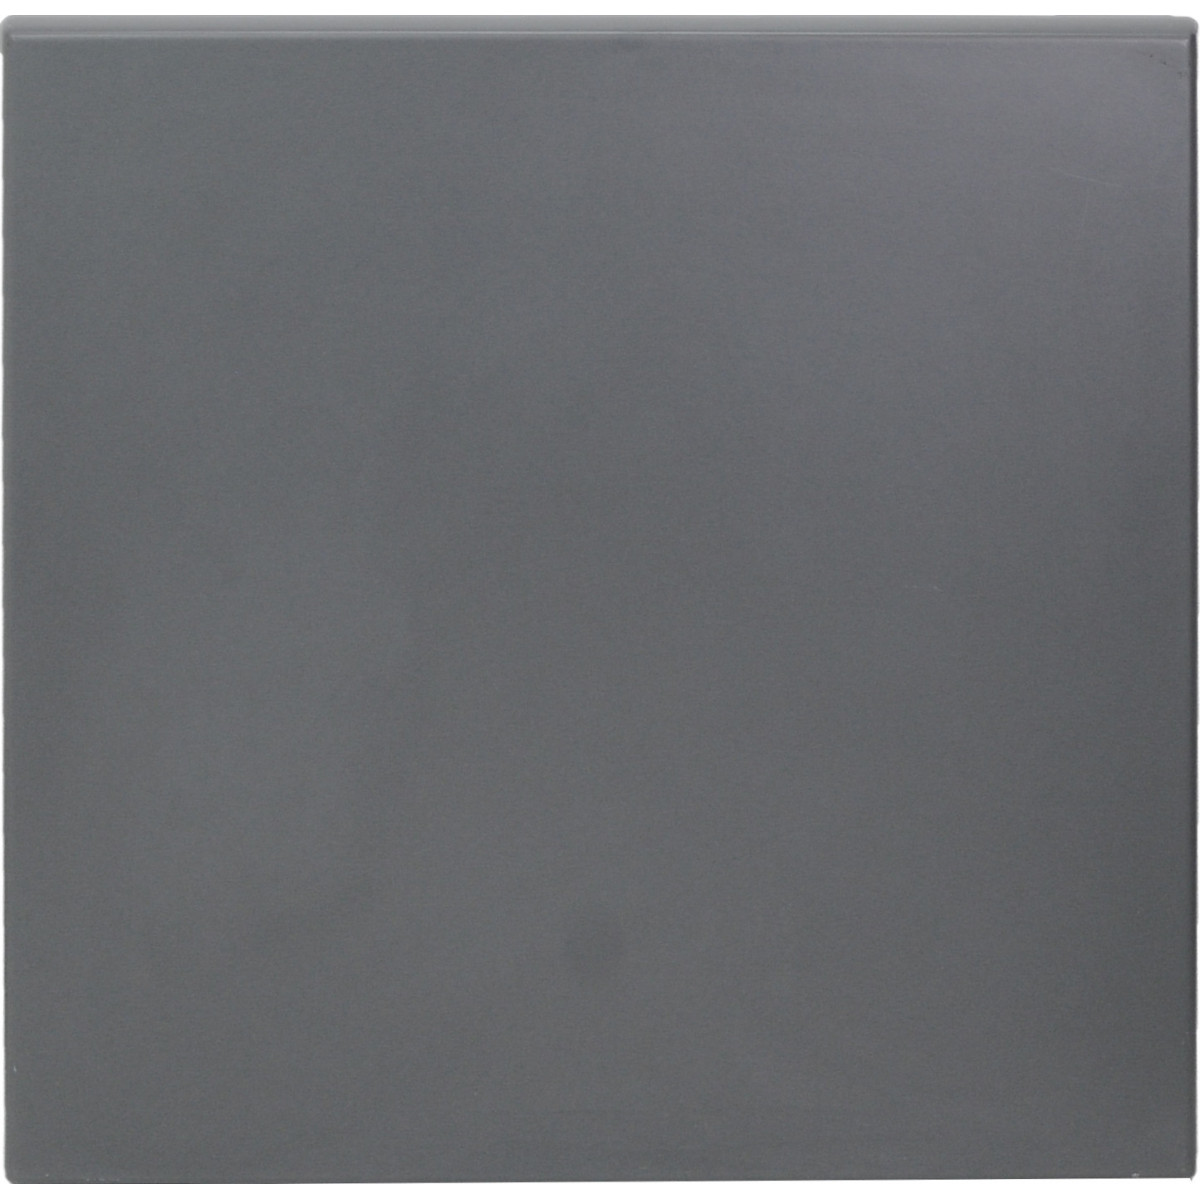 Location Table medola h70 pieds chrome - 100x60 plateau noir